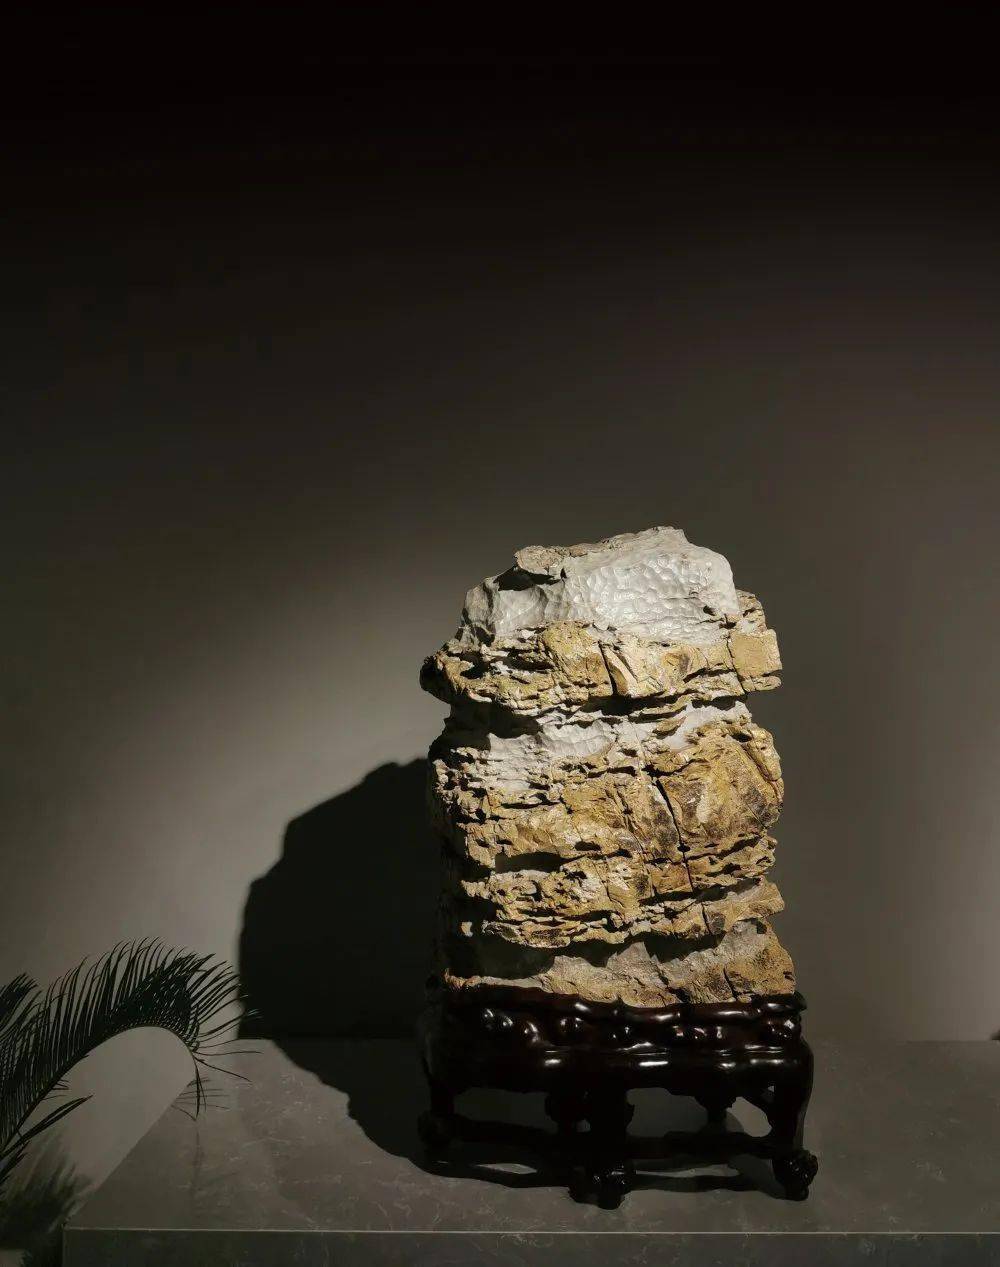 苏州太湖水石艺术馆,顾建华的艺术追求!